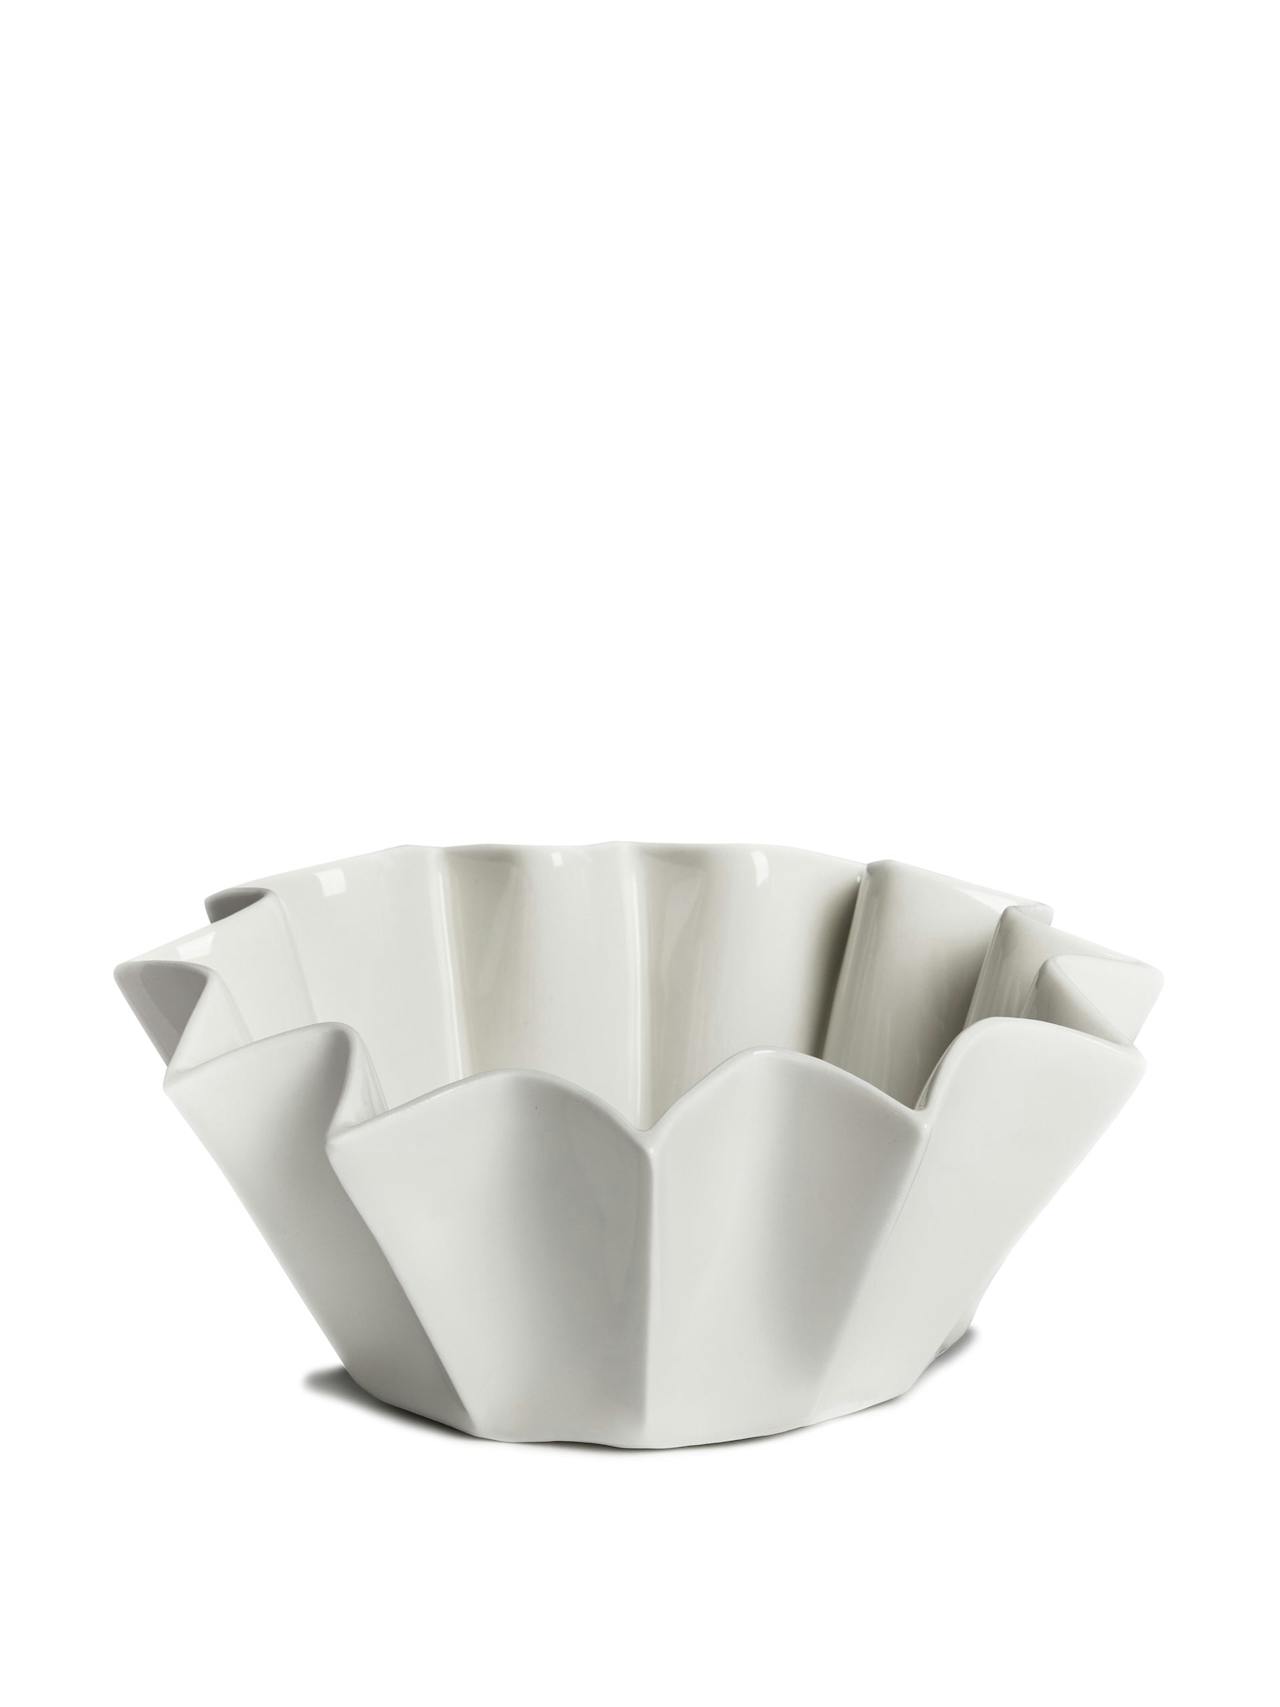 White porcelain Canele bowl